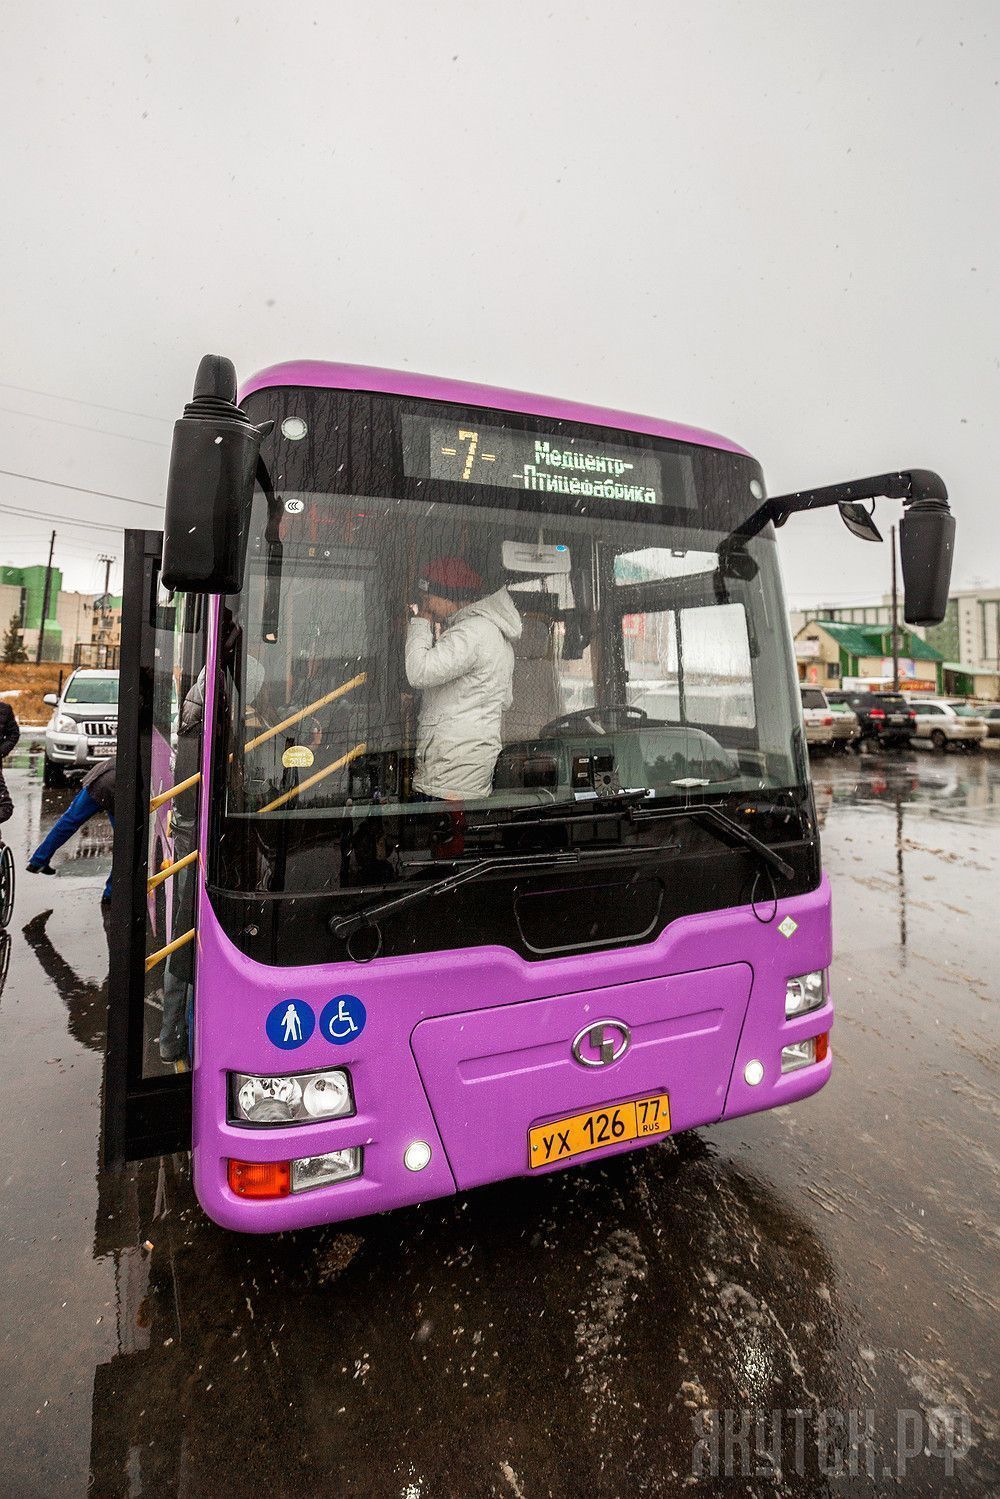 Презентован новый маршрутный автобус «Shaolin»